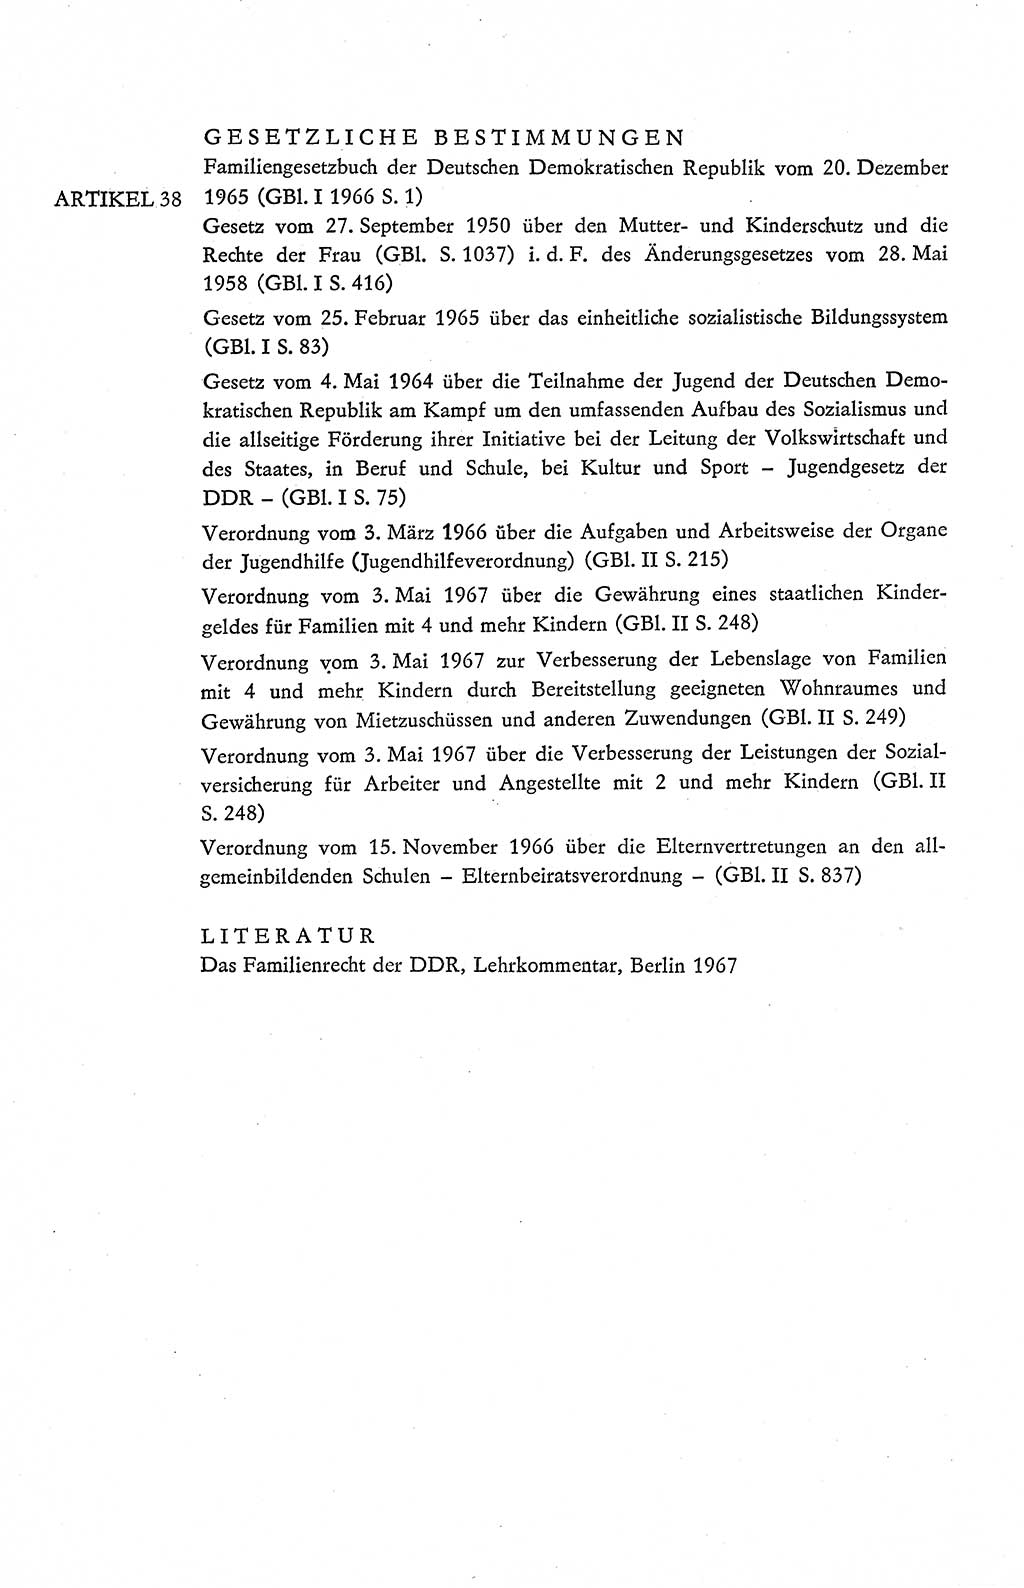 Verfassung der Deutschen Demokratischen Republik (DDR), Dokumente, Kommentar 1969, Band 2, Seite 170 (Verf. DDR Dok. Komm. 1969, Bd. 2, S. 170)